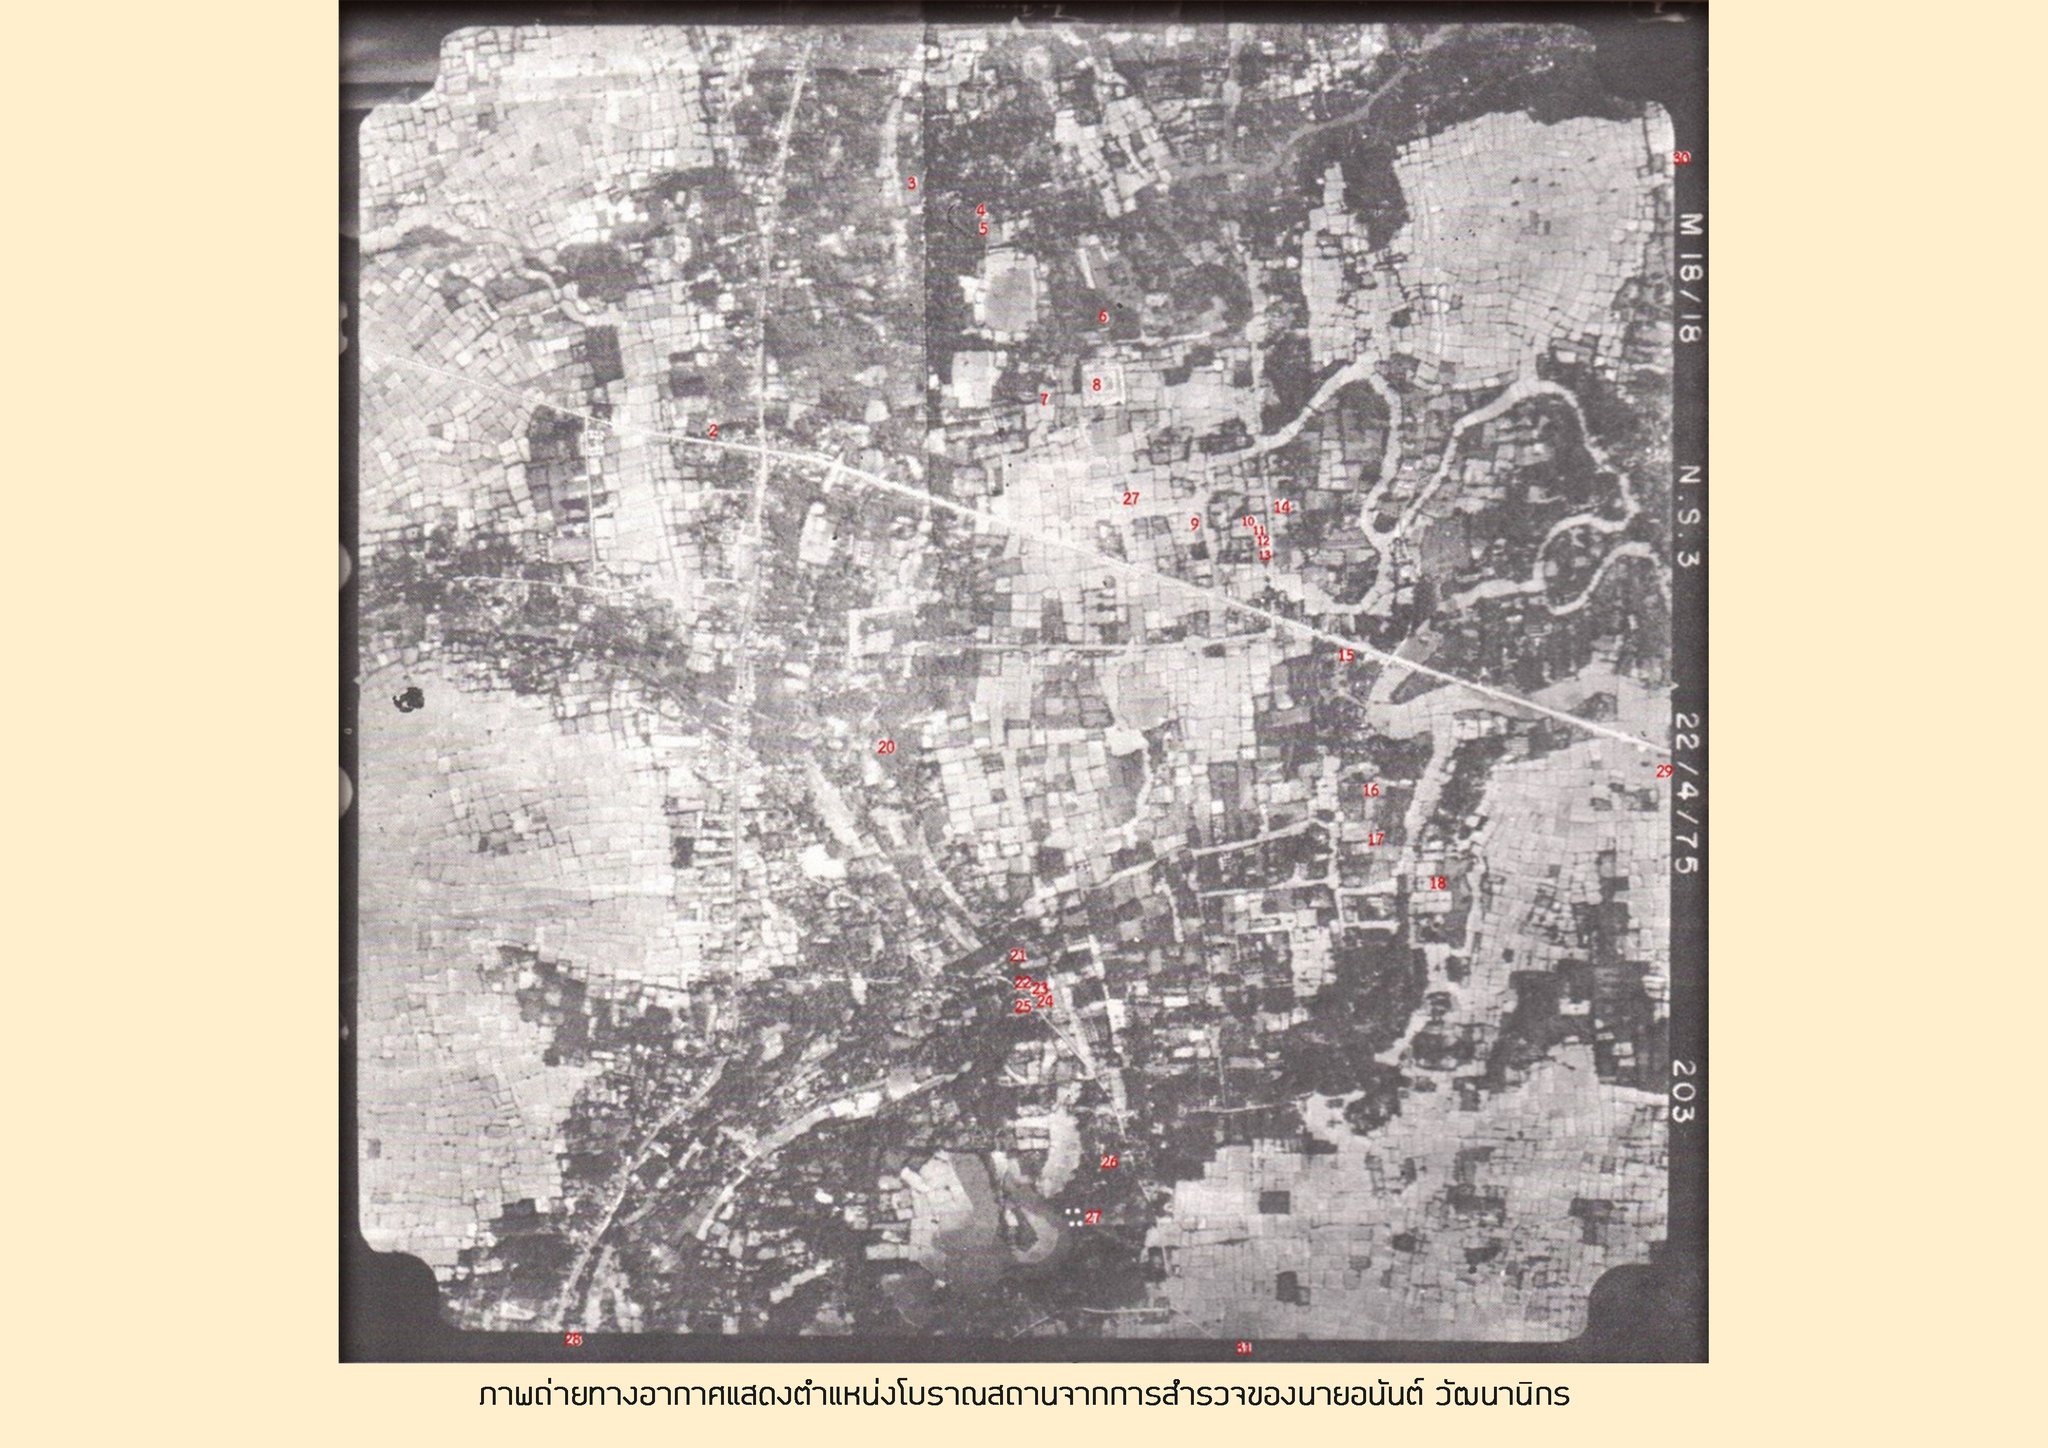 เมืองโบราณยะรัง EP.3  เมืองโบราณยะรัง : การดำเนินงานทางโบราณคดี”